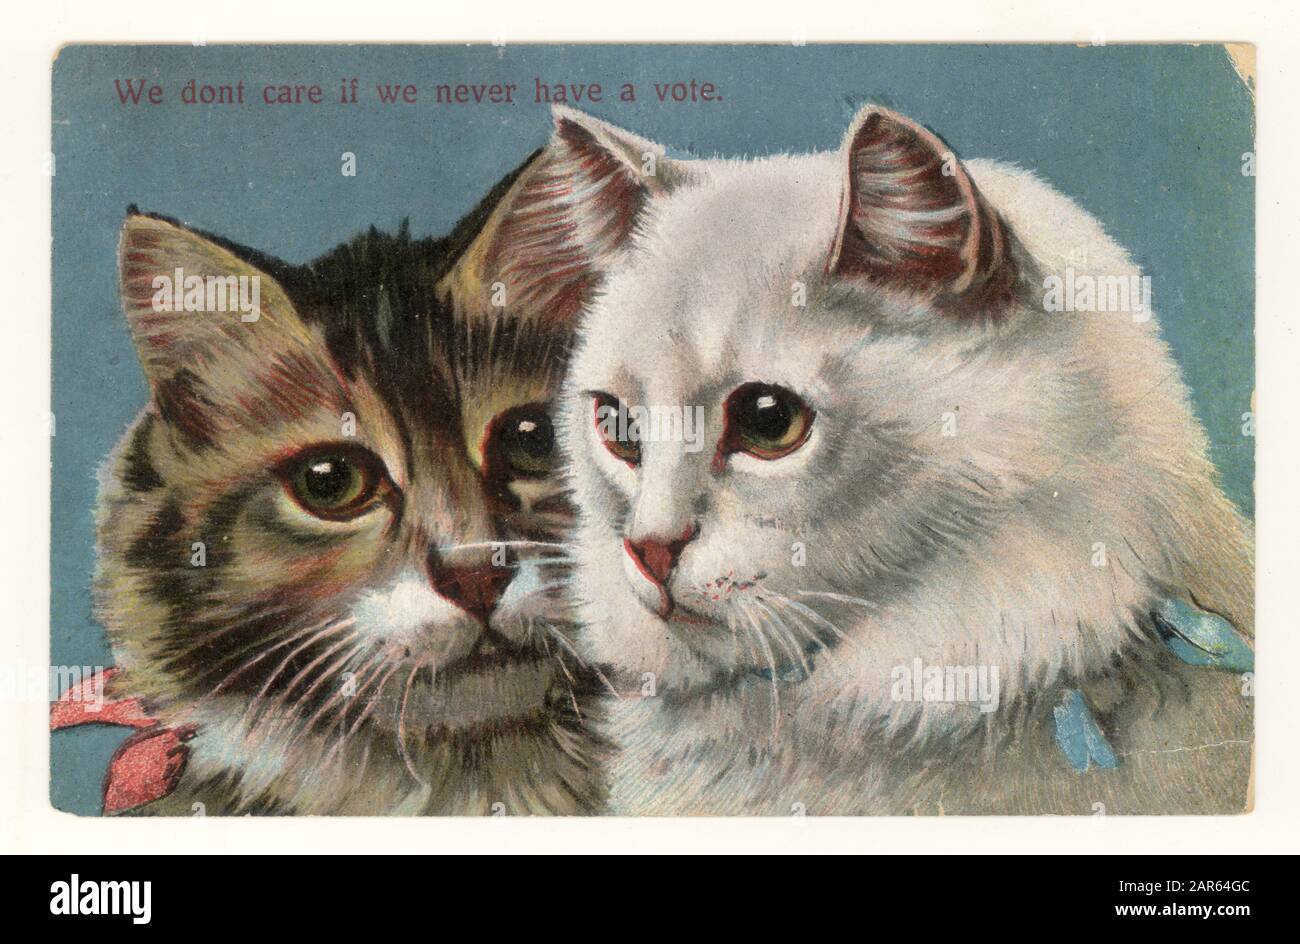 Original début 1900's Edwardian comic anti-suffrage carte postale de chats "nous ne nous soucions pas que nous n'avons jamais le vote" (tôt chat meme), publié en 1909, Royaume-Uni Banque D'Images